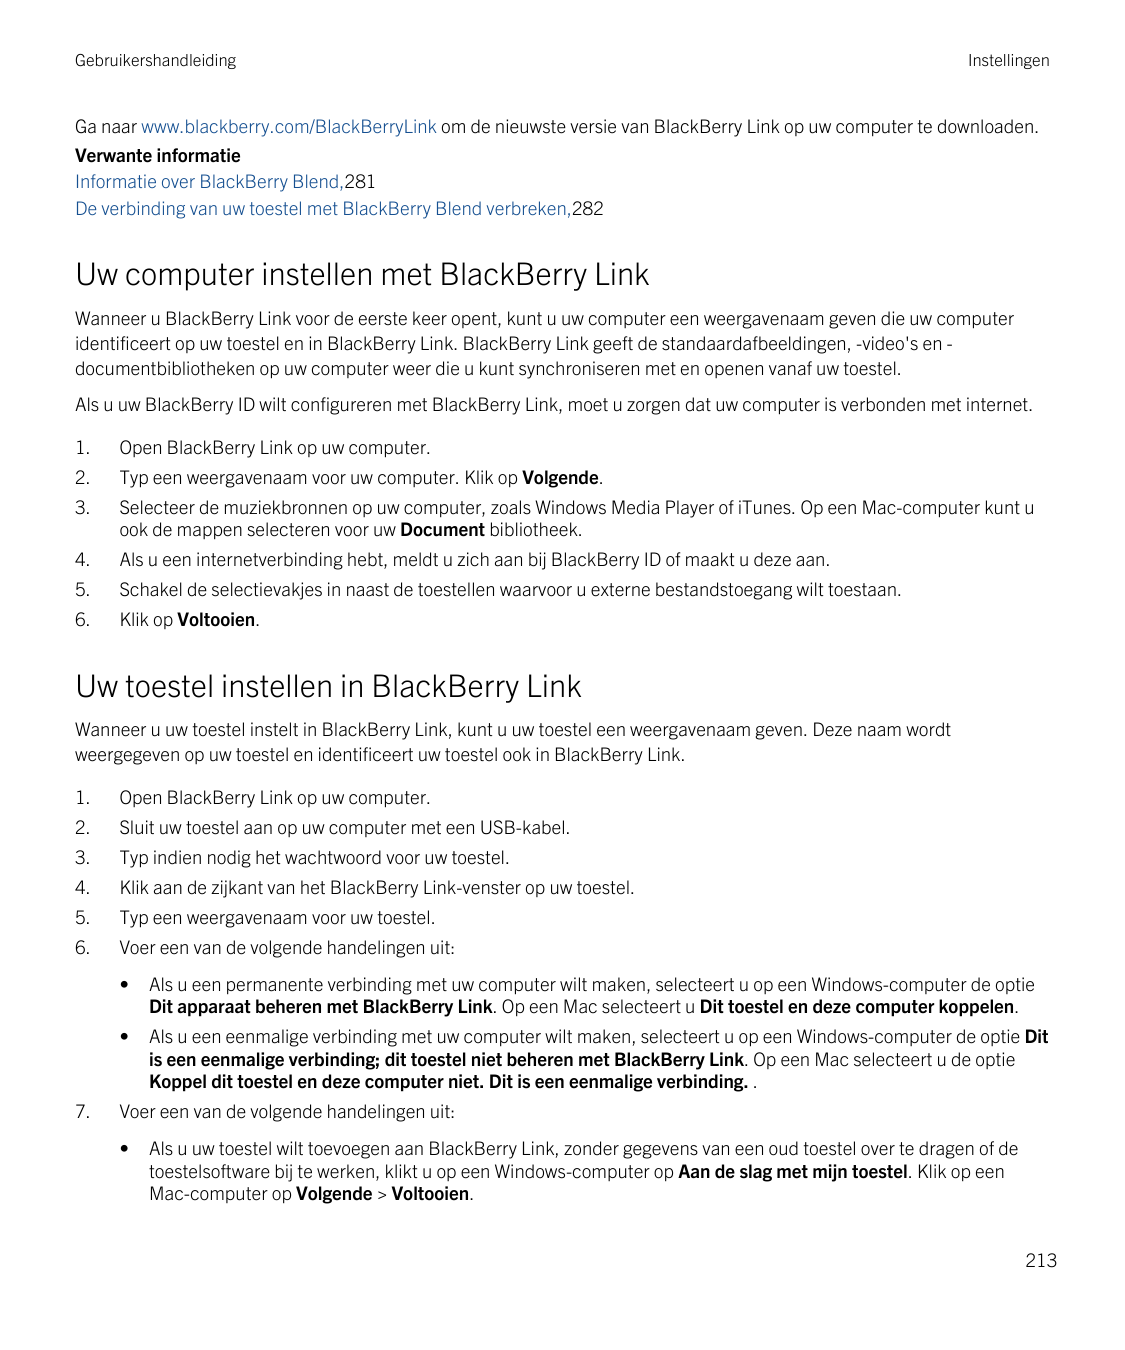 GebruikershandleidingInstellingenGa naar www.blackberry.com/BlackBerryLink om de nieuwste versie van BlackBerry Link op uw compu